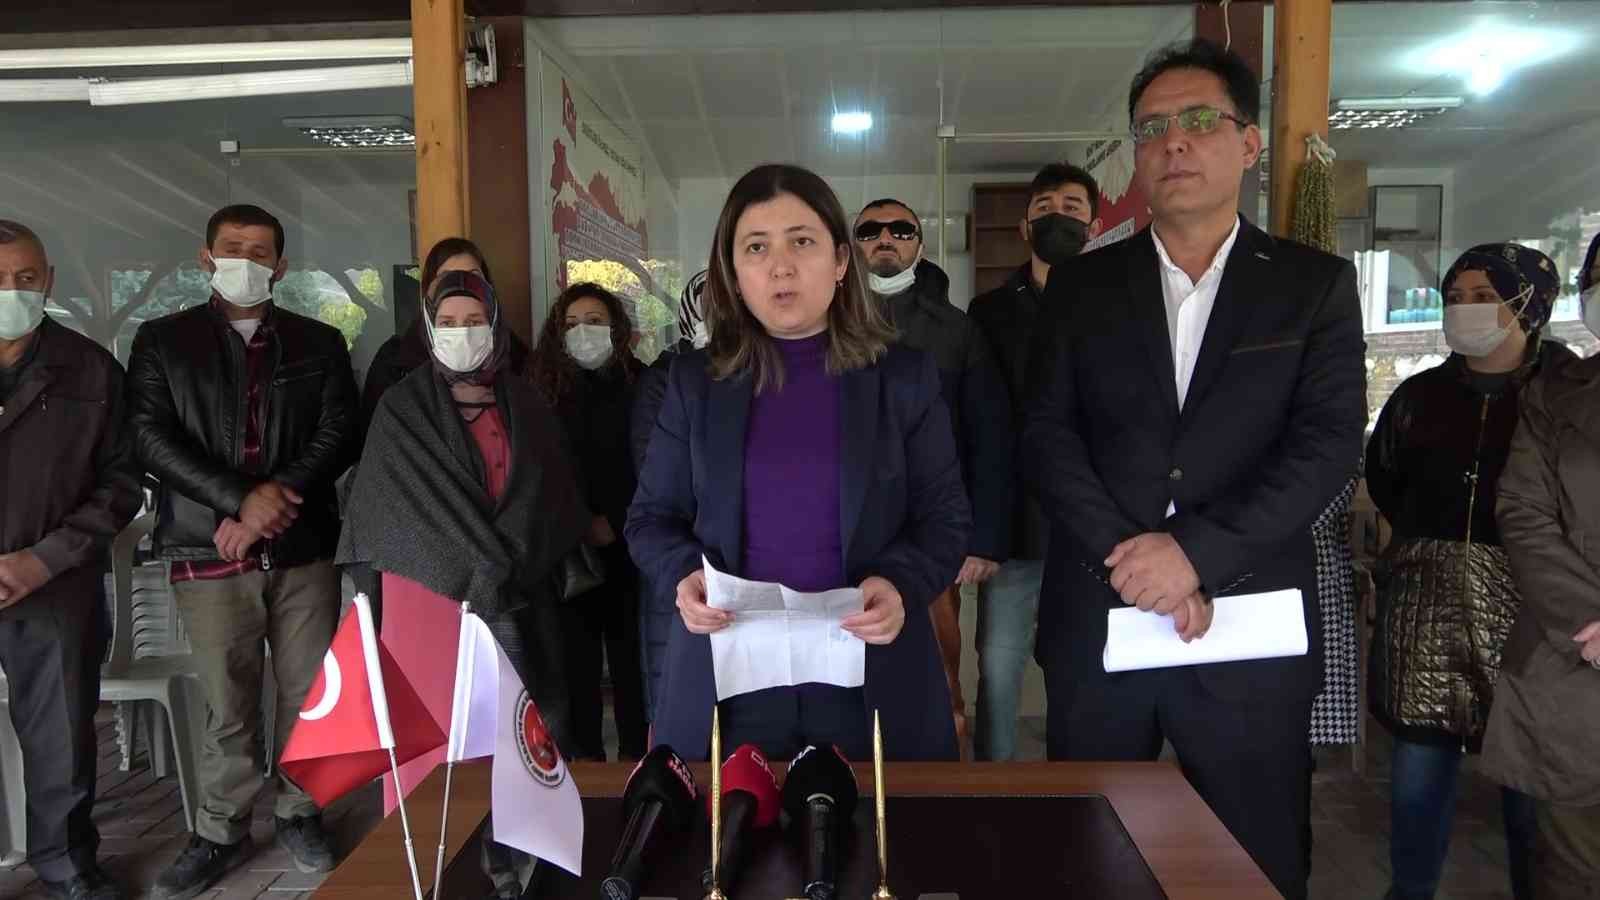 Amasyalı şehit aileleri ve gazilerden İYİ Partili Türkkan’a tepki #amasya